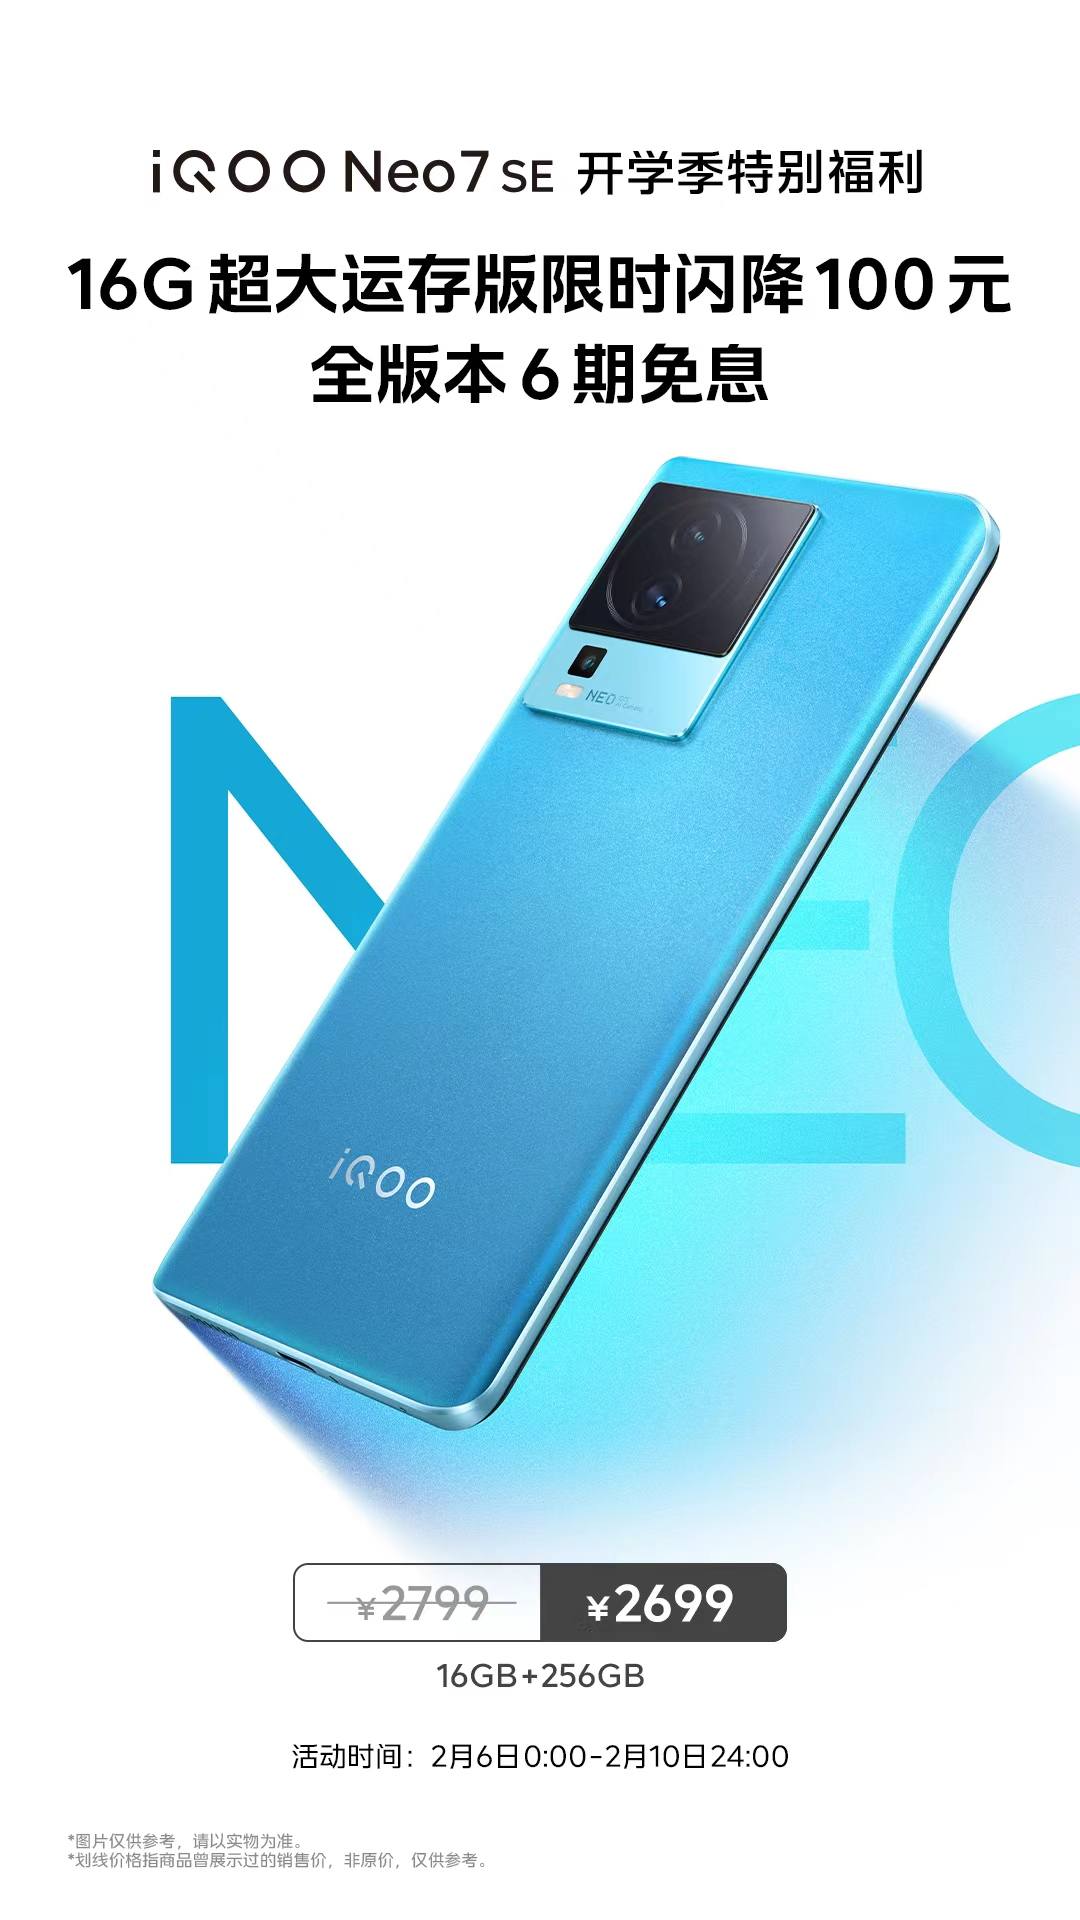 iqoo neo7|新“2K神机”iQOO Neo7 SE 入手直降100元 加享6期免息